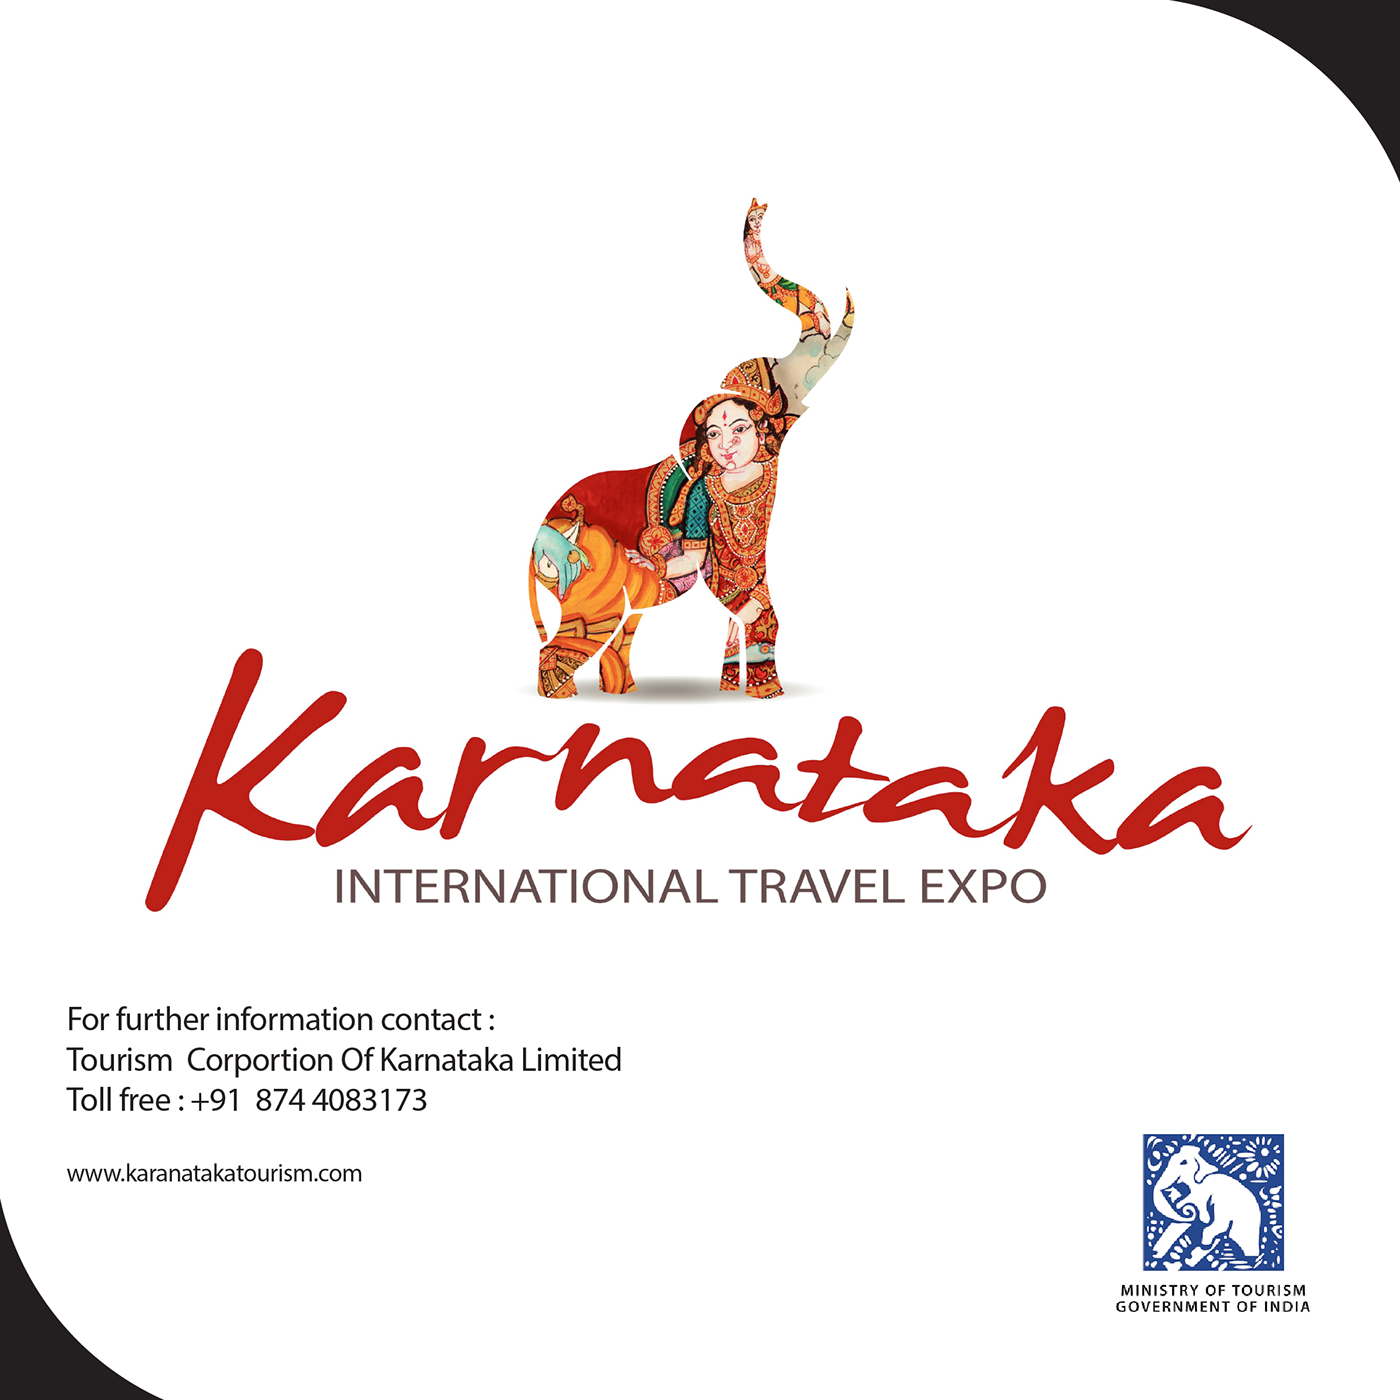 KARNATKA KARNATKATRAVEL southindia Travel